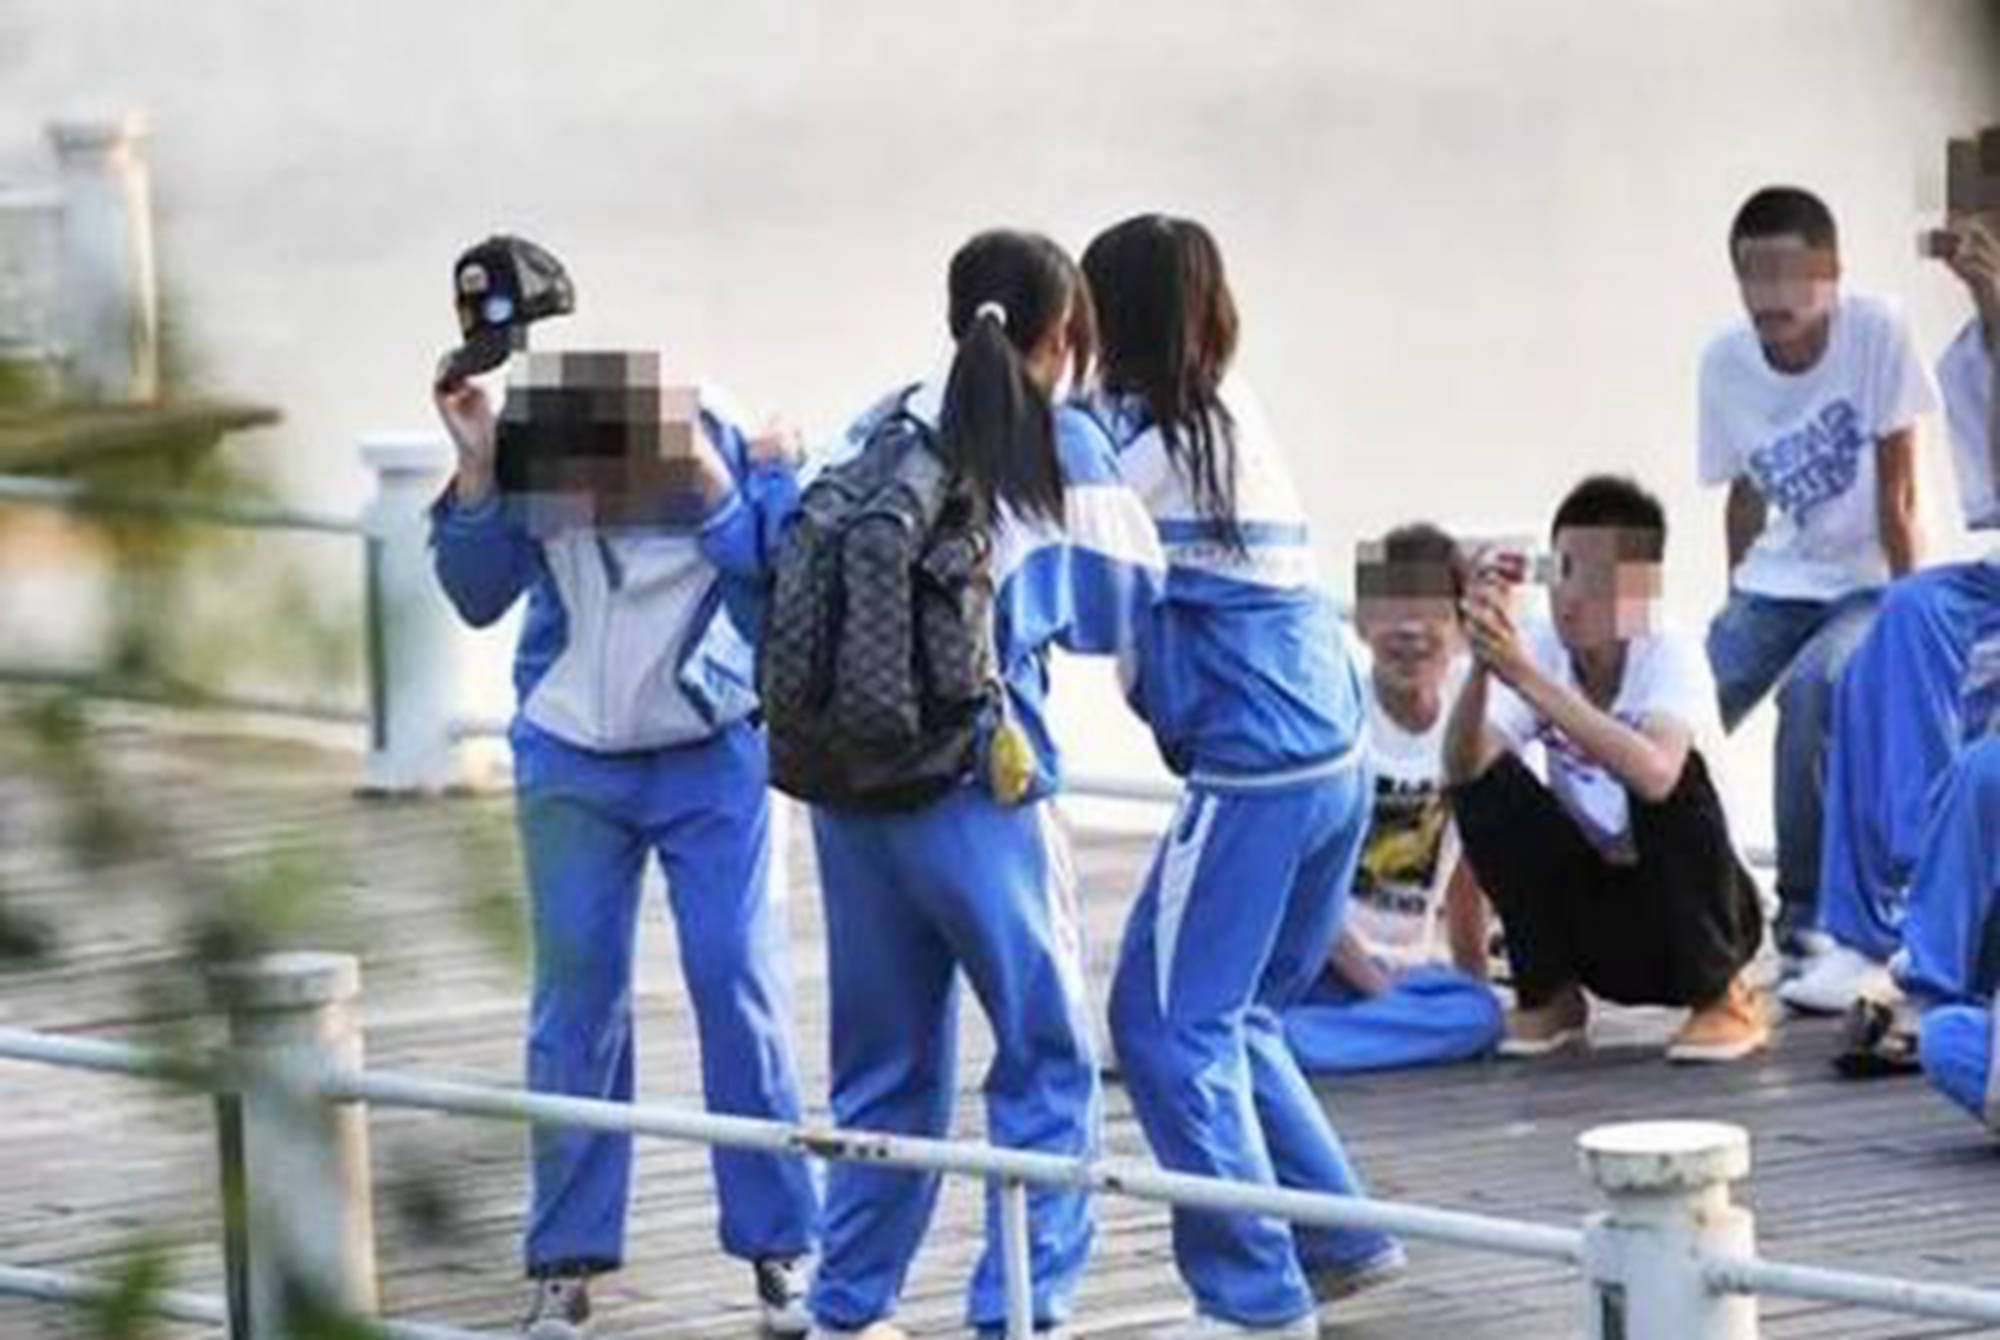 鳳山女學生遭霸凌 家長提告9人 - 地方新聞 - 中國時報